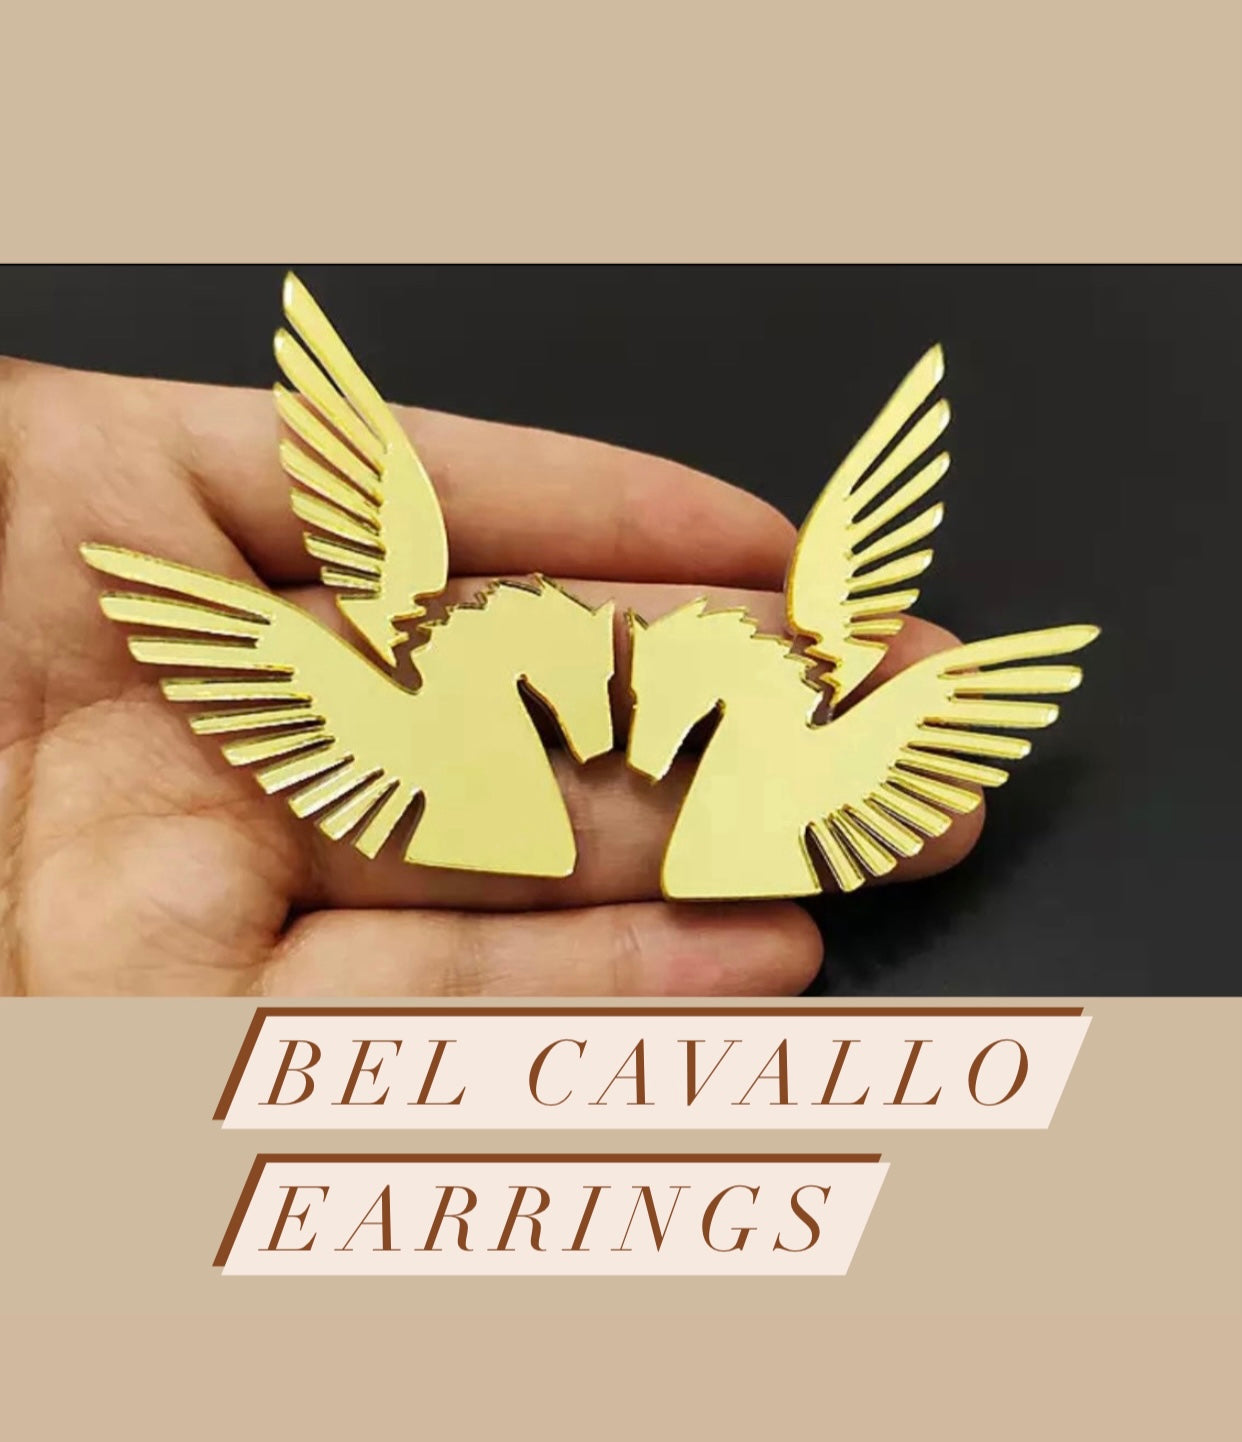 Bel Cavallo Earrings